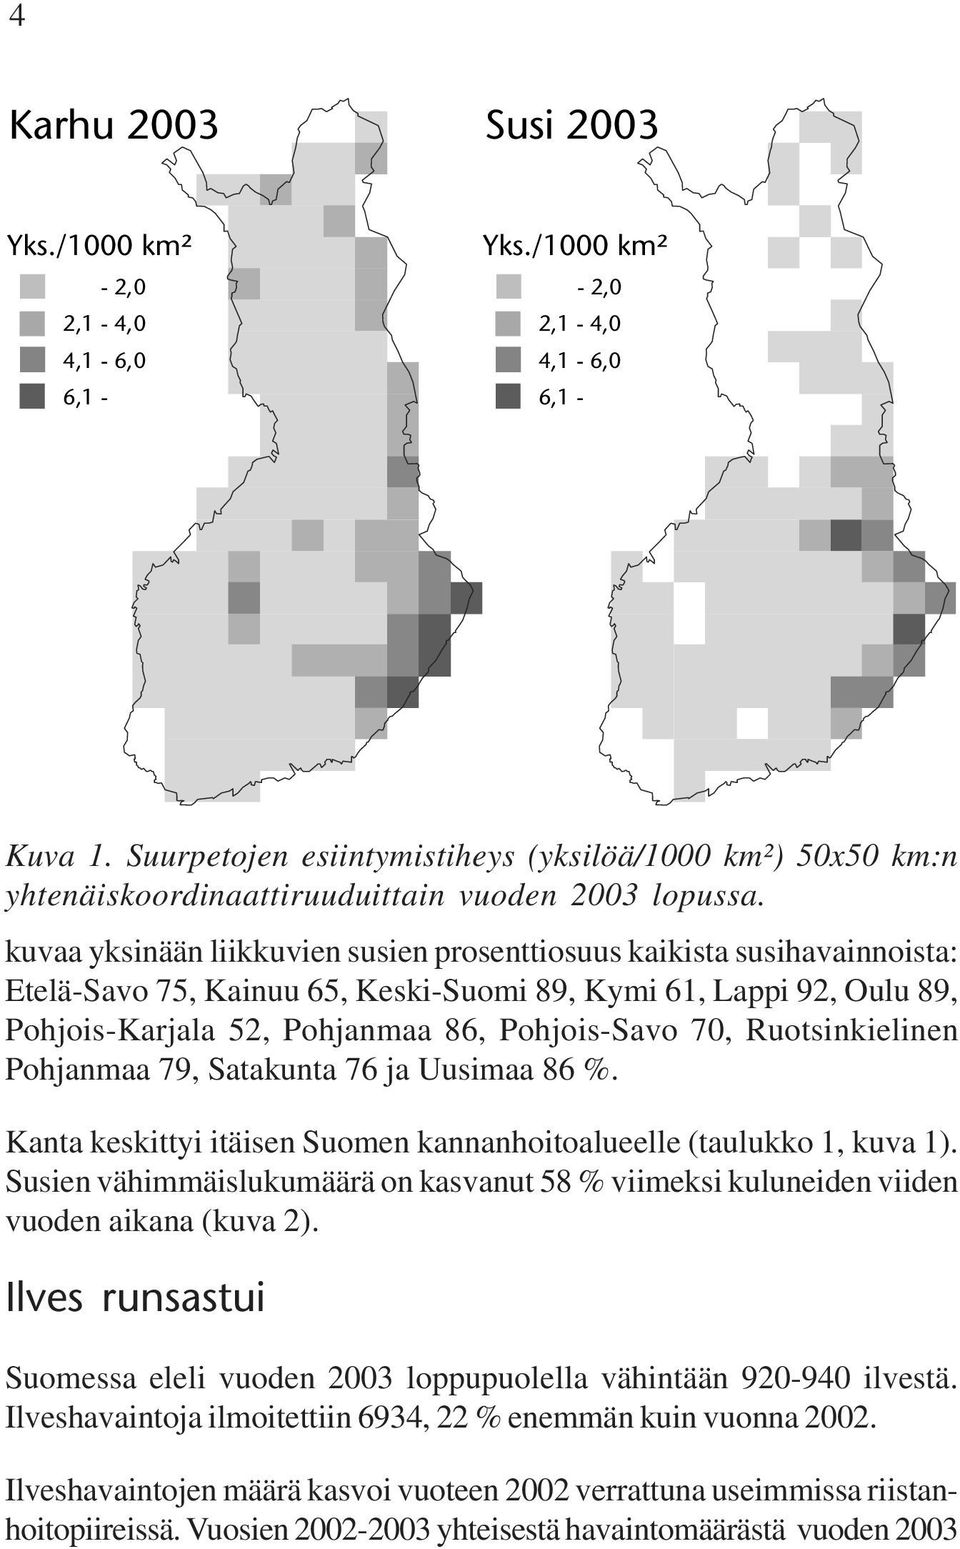 Ruotsinkielinen Pohjanmaa 79, Satakunta 76 ja Uusimaa 86 %. Kanta keskittyi itäisen Suomen kannanhoitoalueelle (taulukko 1, kuva 1).